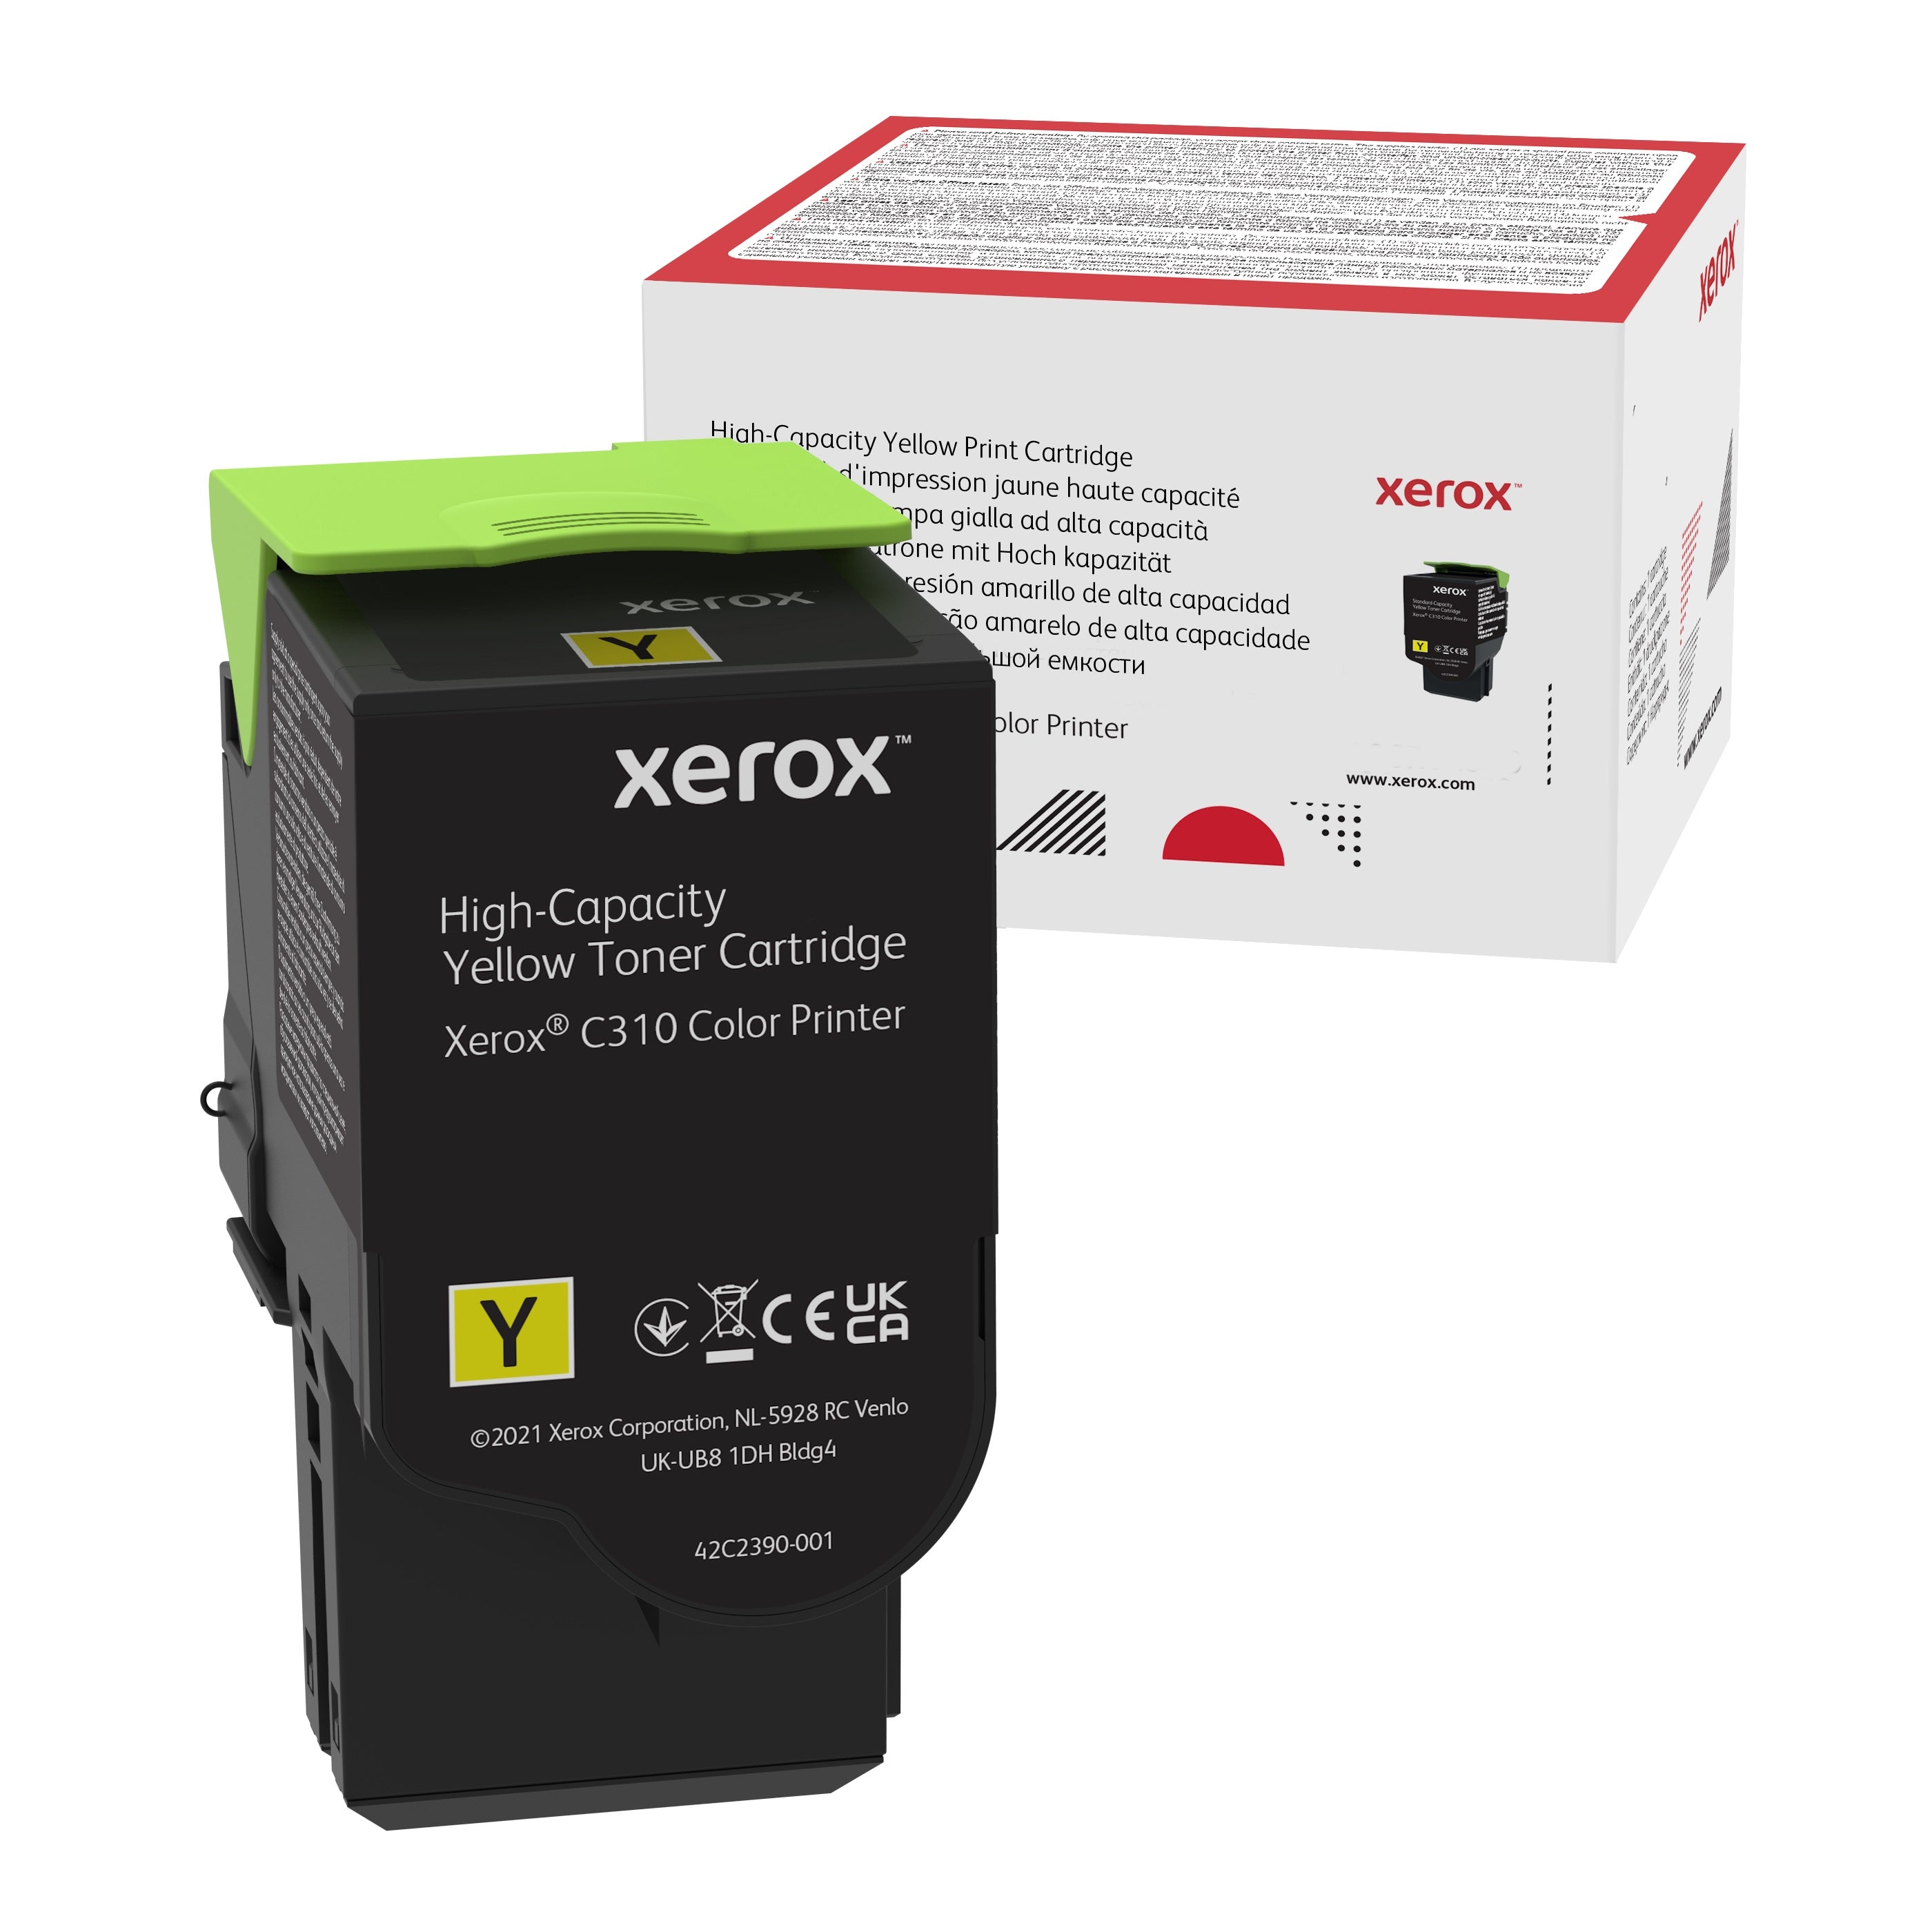 Absolute Toner Genuine Xerox 006R04367 High Capacity Yellow Toner Cartridge For C310/C315 Color Printer Original Xerox Cartridges